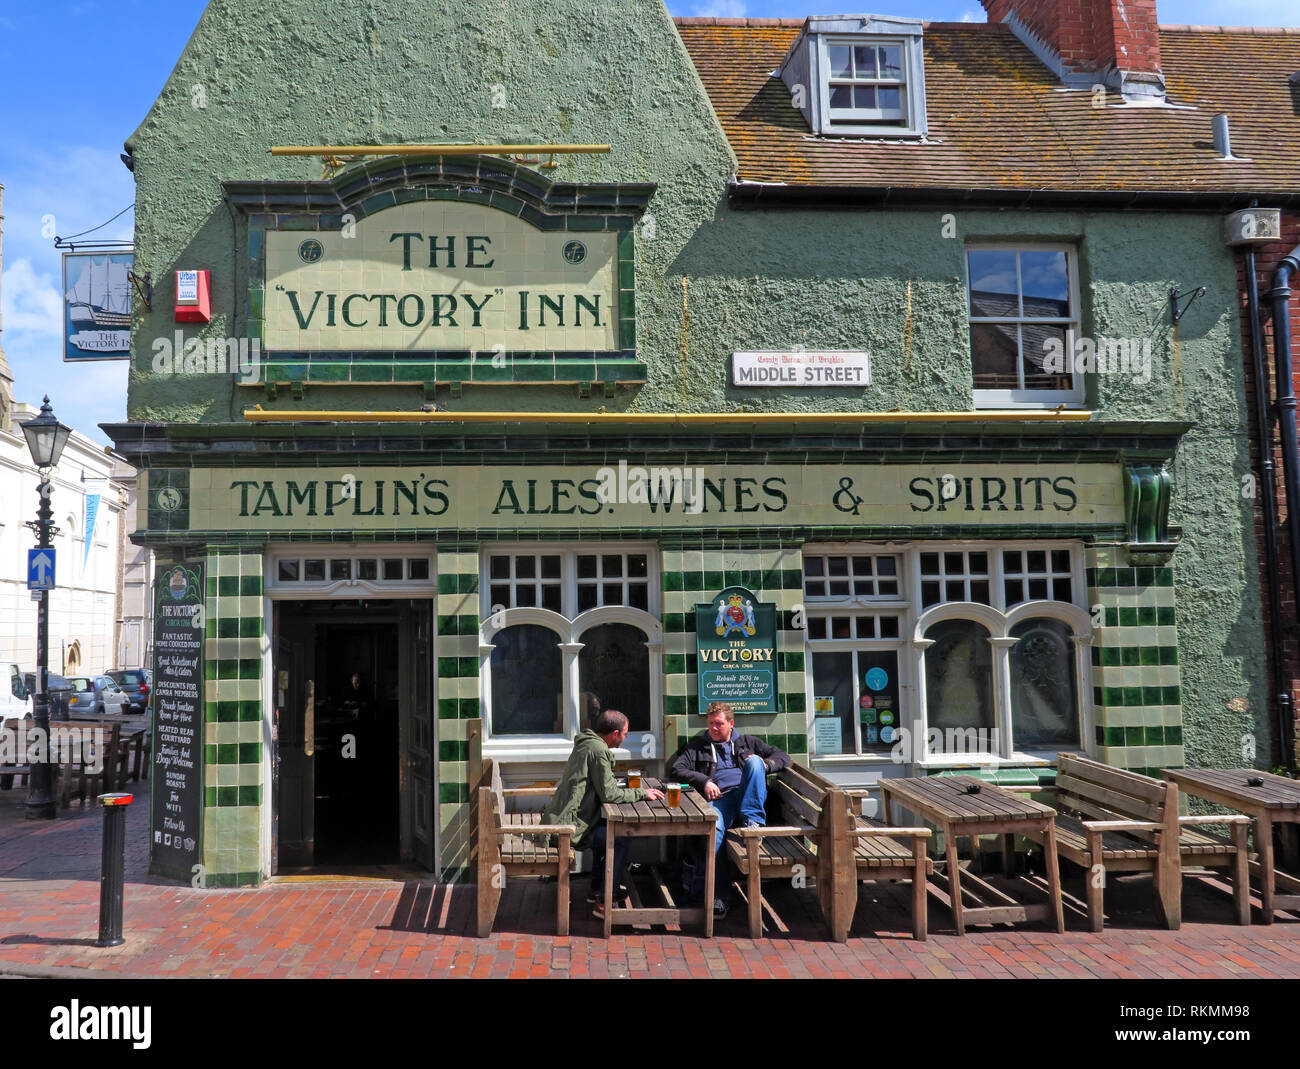 Die Victory Inn, Tamplins Bieren, Weinen, Spirituosen, grüne Fliesen- Kneipe in Middle Street, Brighton, East Sussex, England, Großbritannien Stockfoto